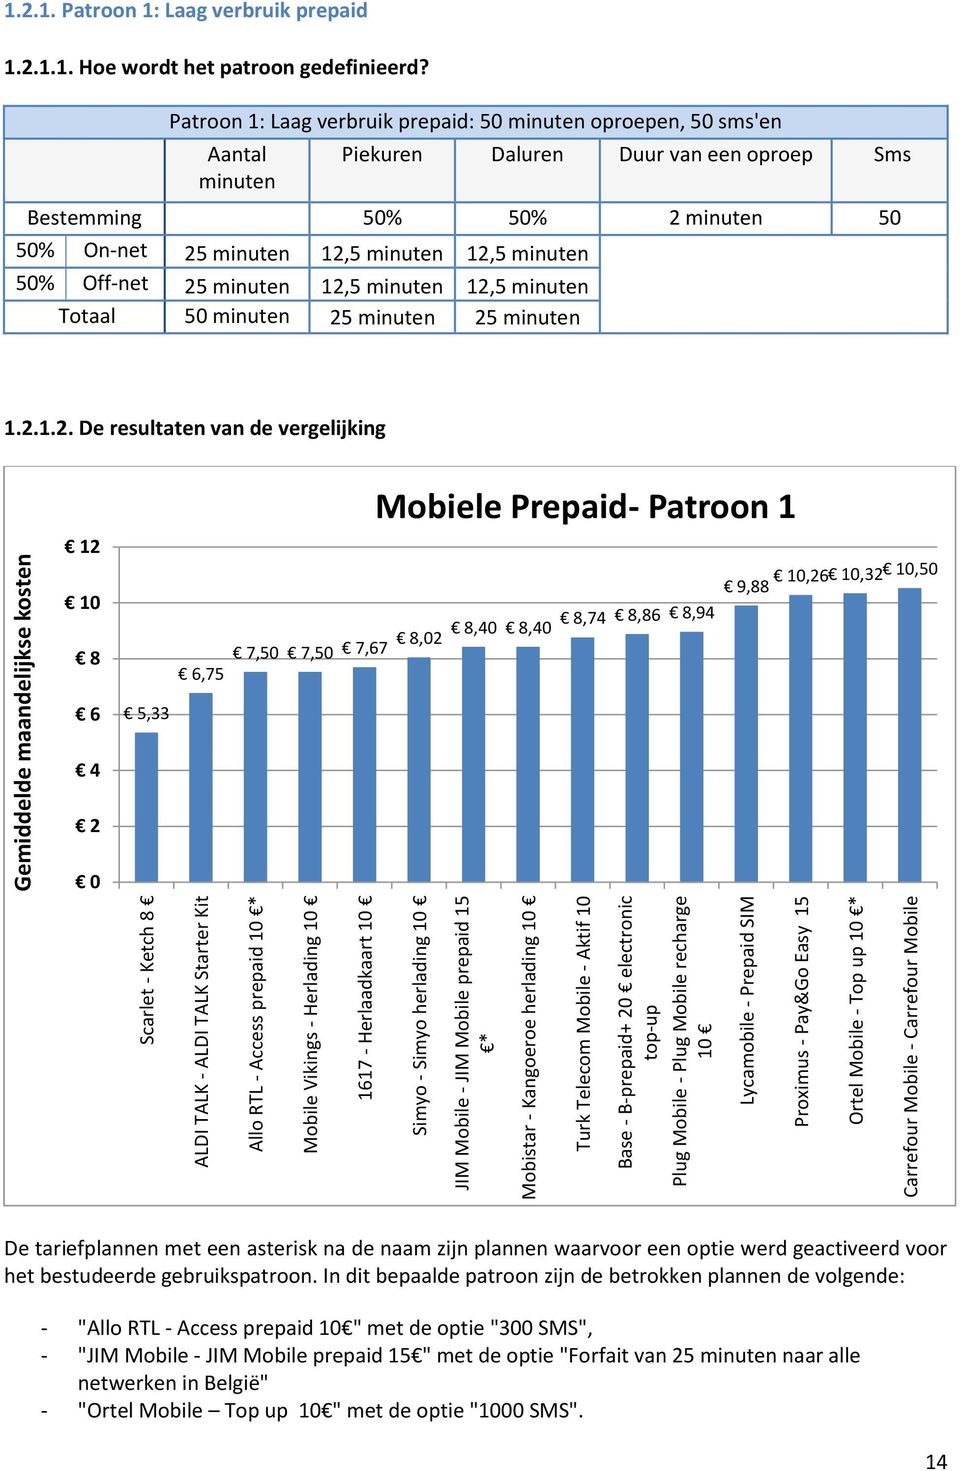 Mobile - Top up 10 * Carrefour Mobile - Carrefour Mobile 1.2.1. Patroon 1: Laag verbruik prepaid 1.2.1.1. Hoe wordt het patroon gedefinieerd?